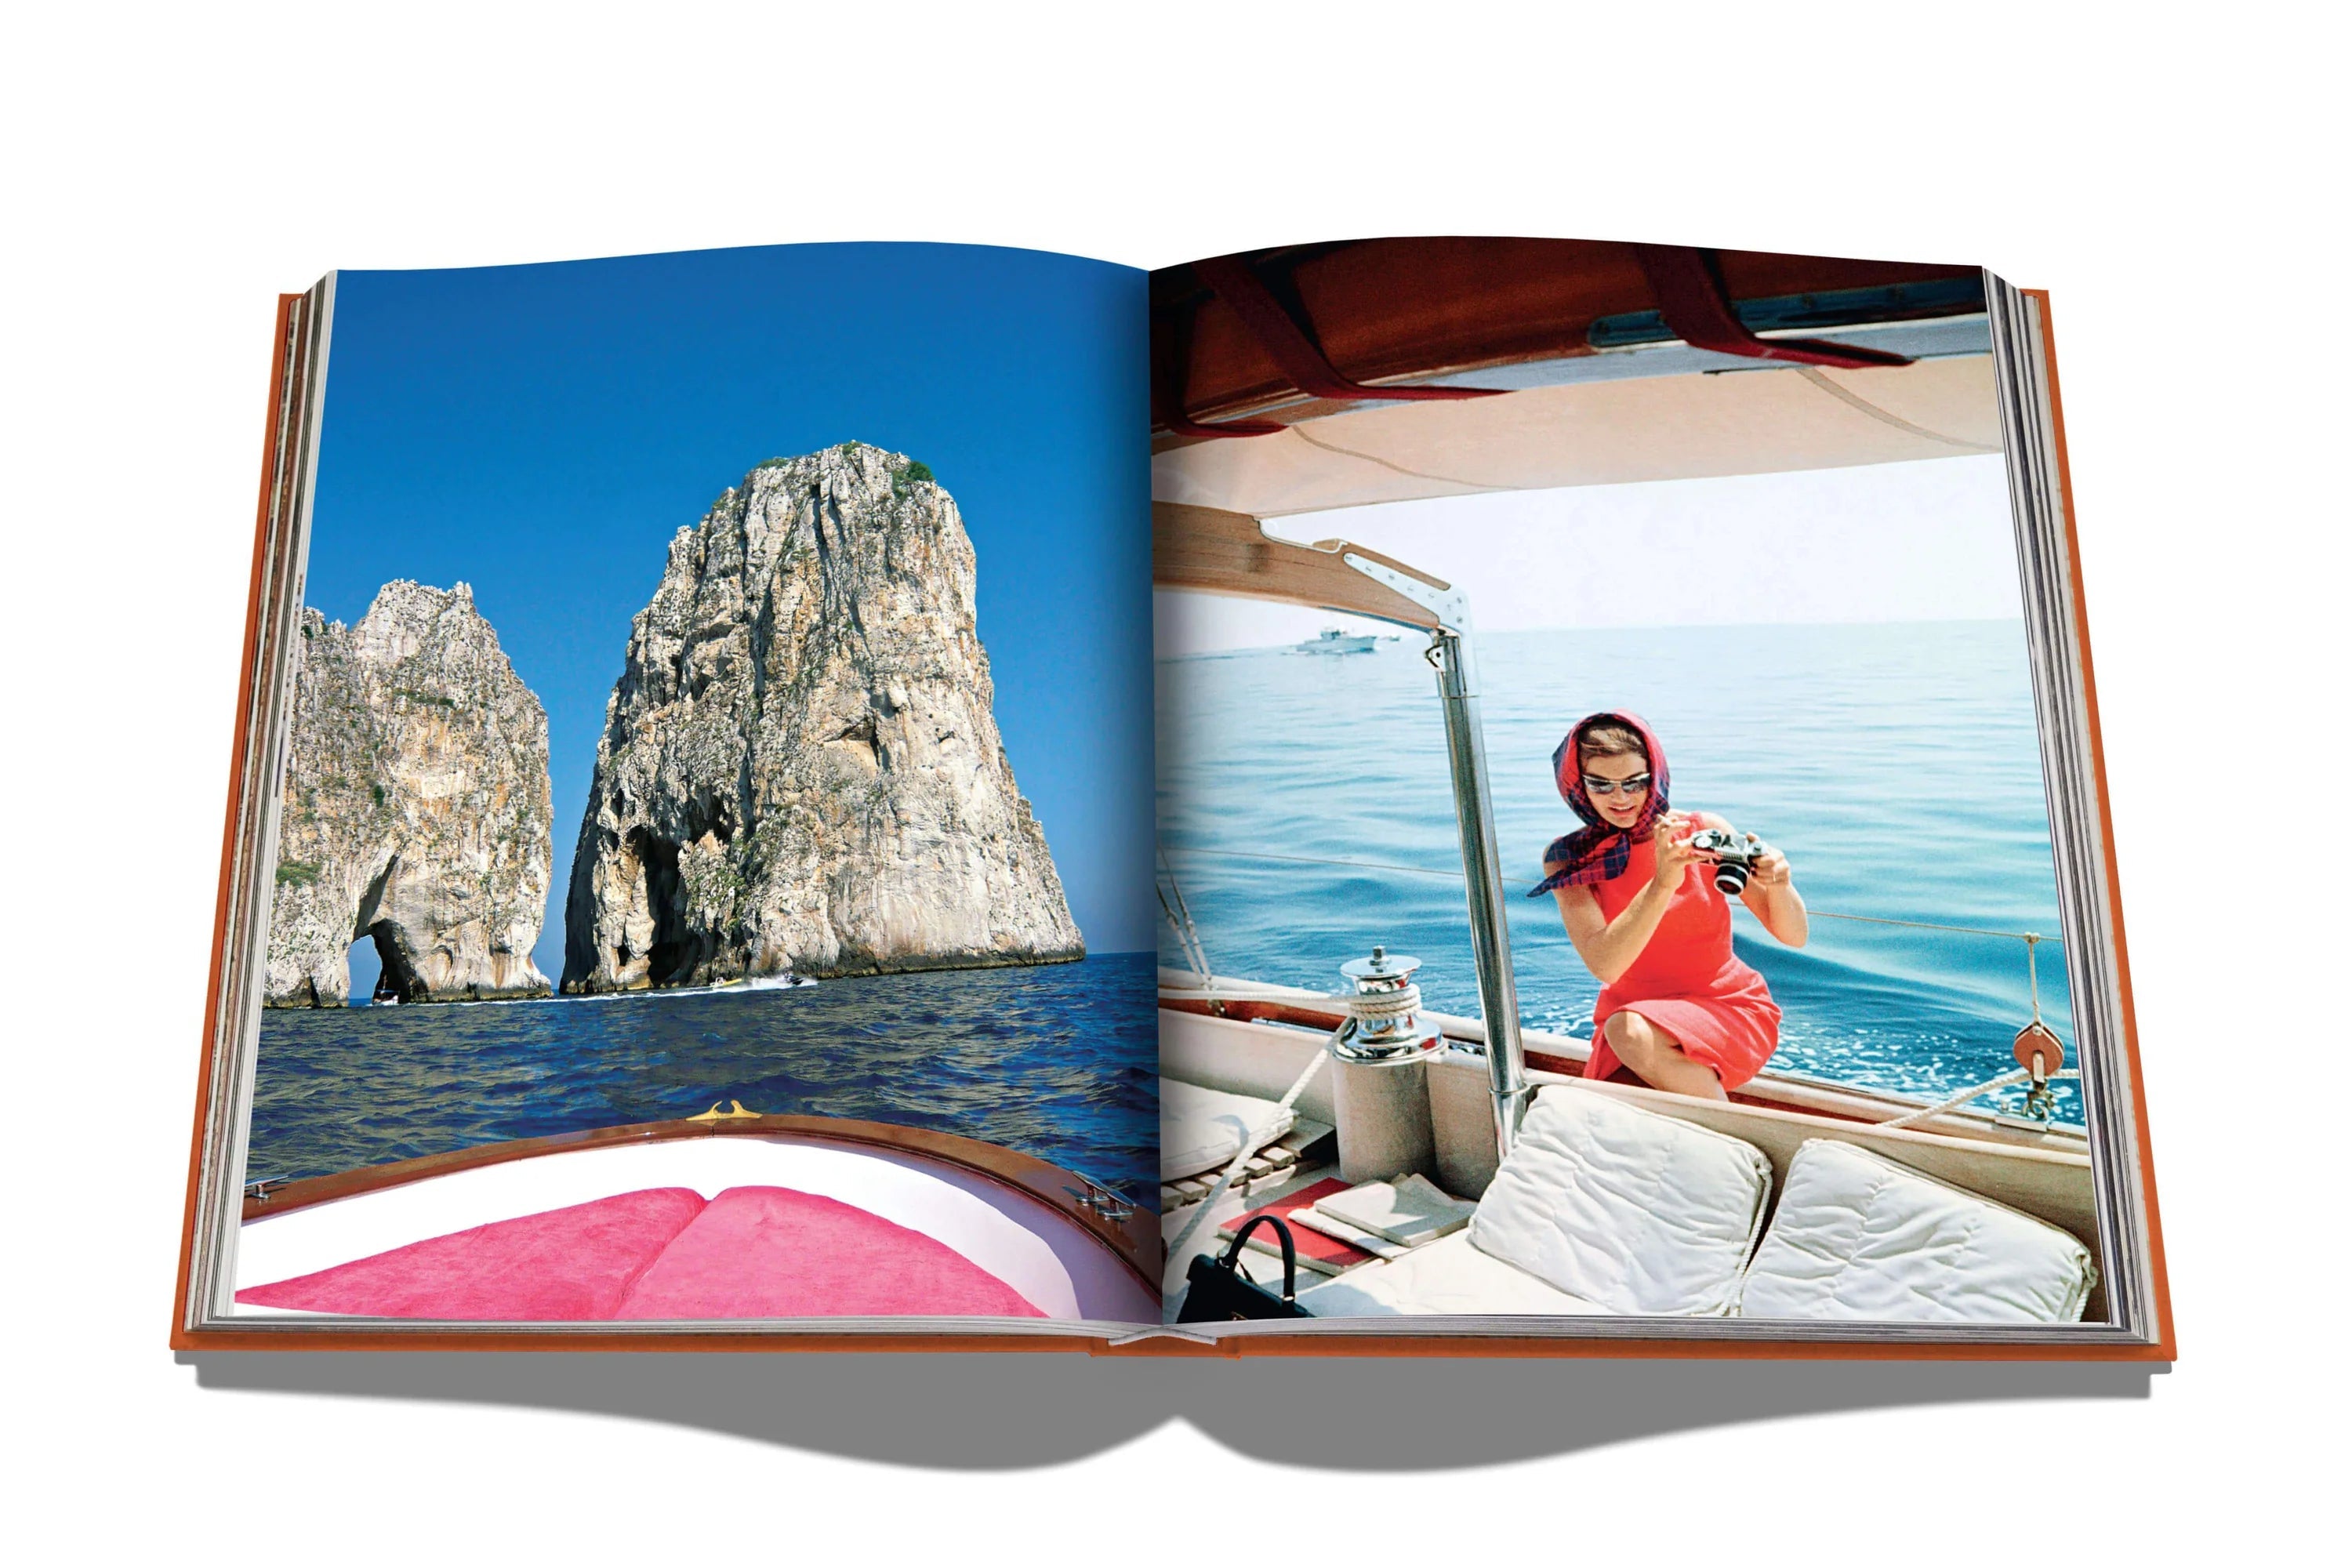 Assouline Capri Dolce Vita Book